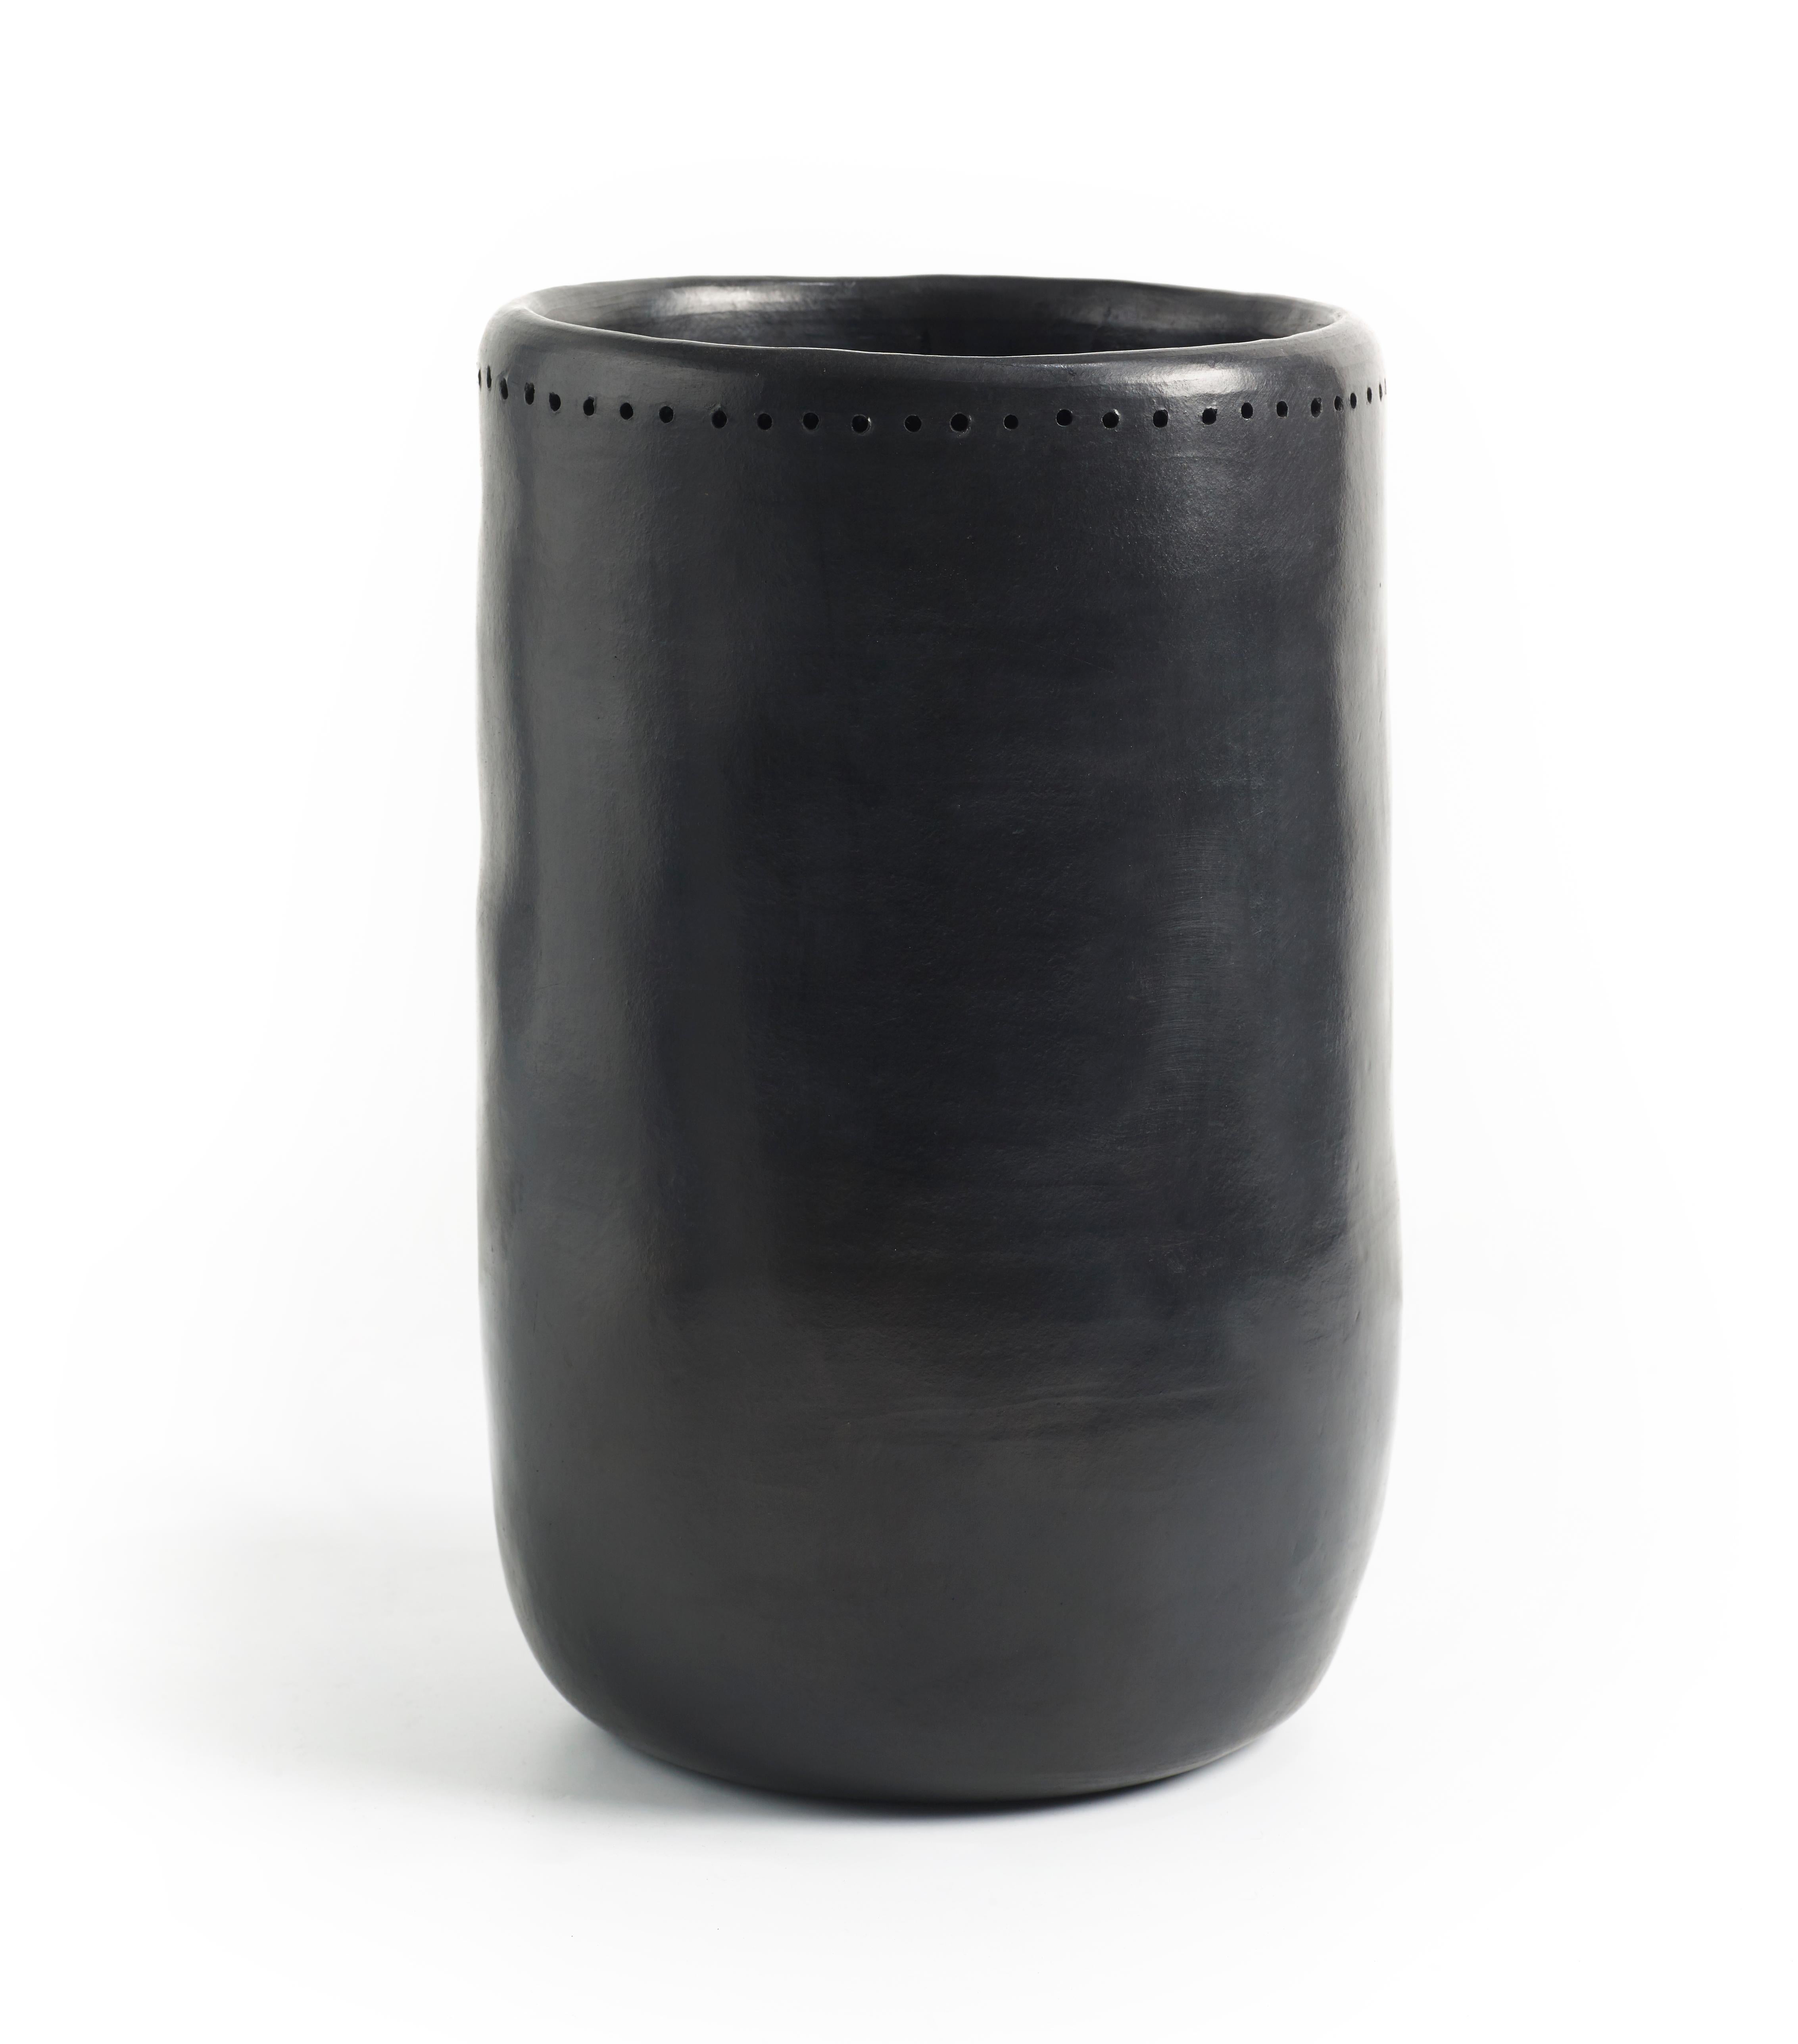 Vase 2 barro esstisch von Sebastian Herkner
MATERIALIEN: Hitzebeständige schwarze Keramik. 
Technik: Glasiert. Im Ofen gegart und mit Halbedelsteinen poliert. 
Abmessungen: Durchmesser 16 cm x Höhe 27 cm 
Erhältlich in Größe klein. 

Diese Vase